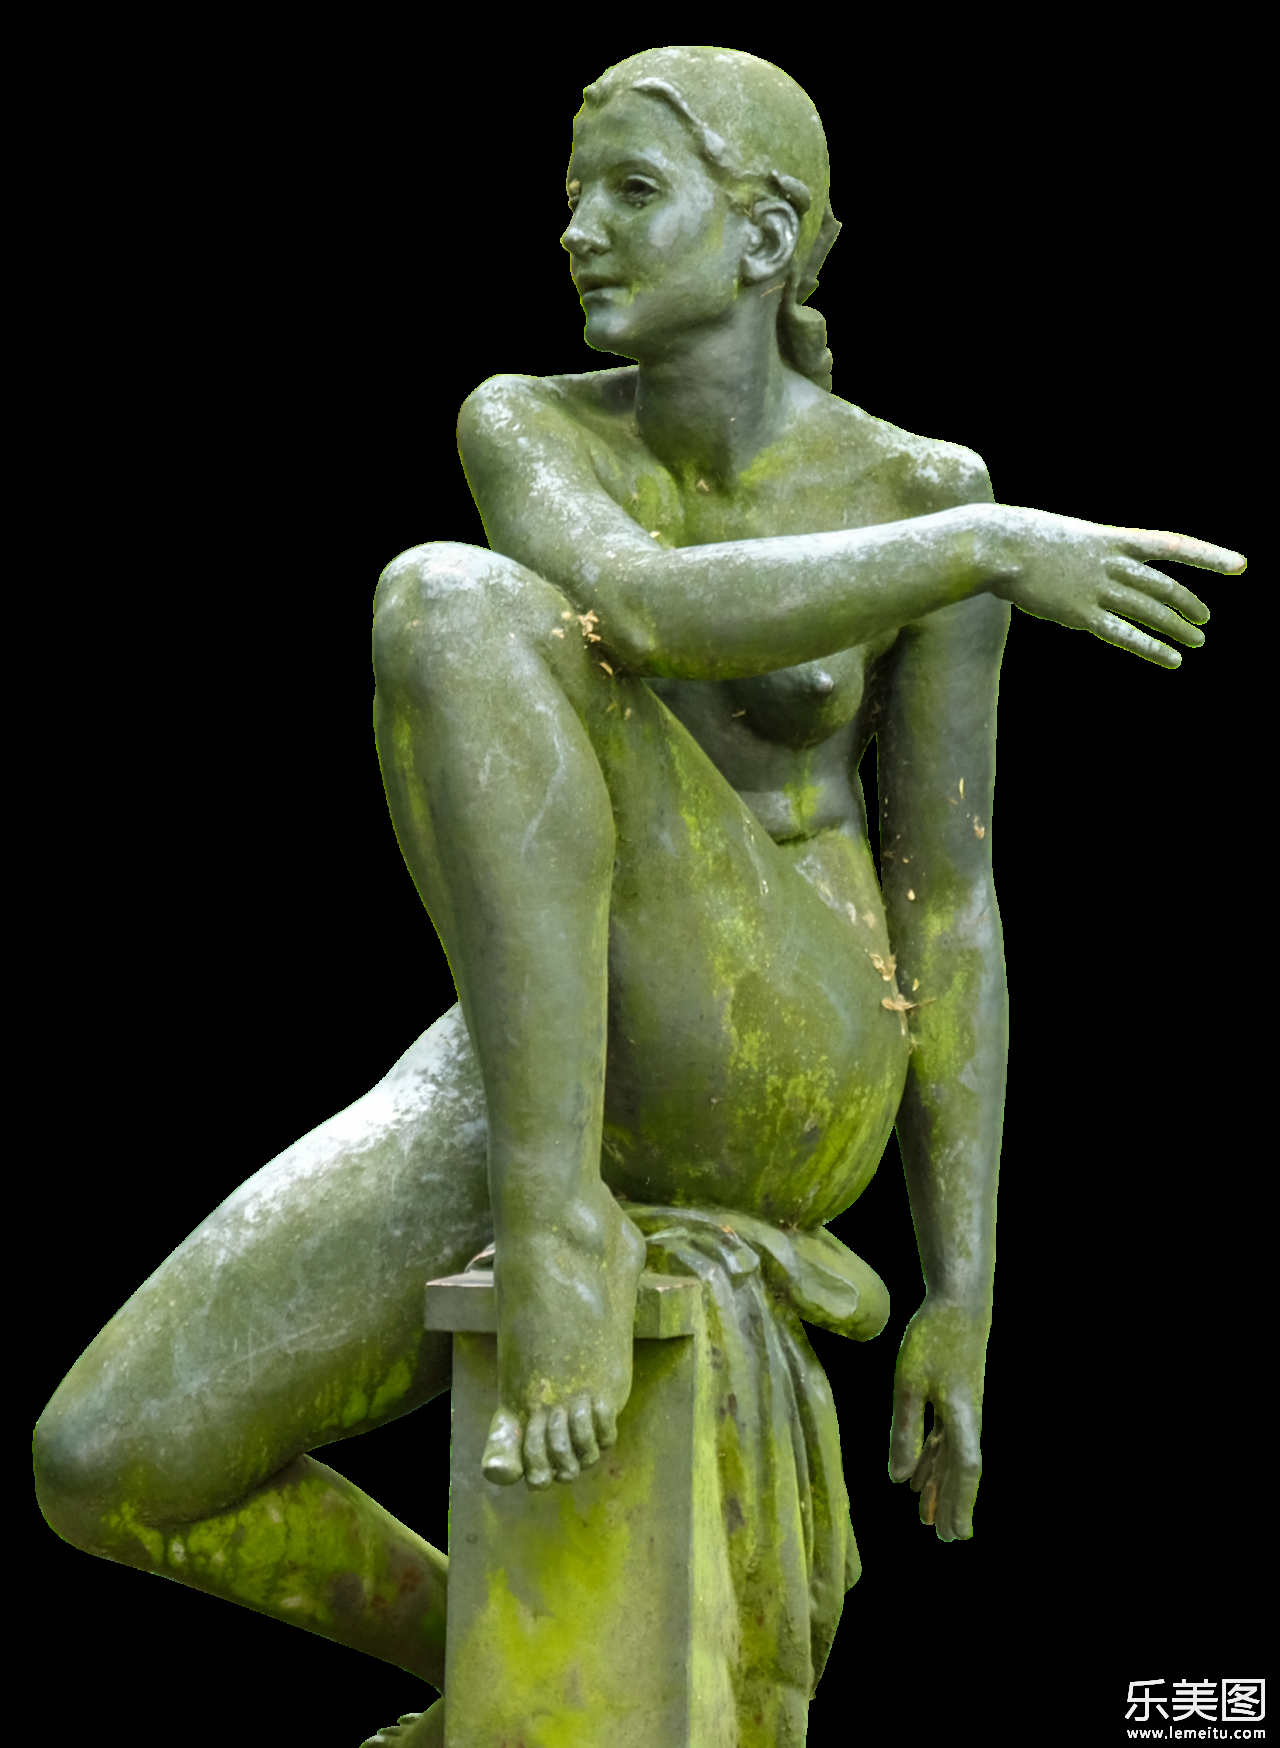 坐着的女性艺术青铜雕像